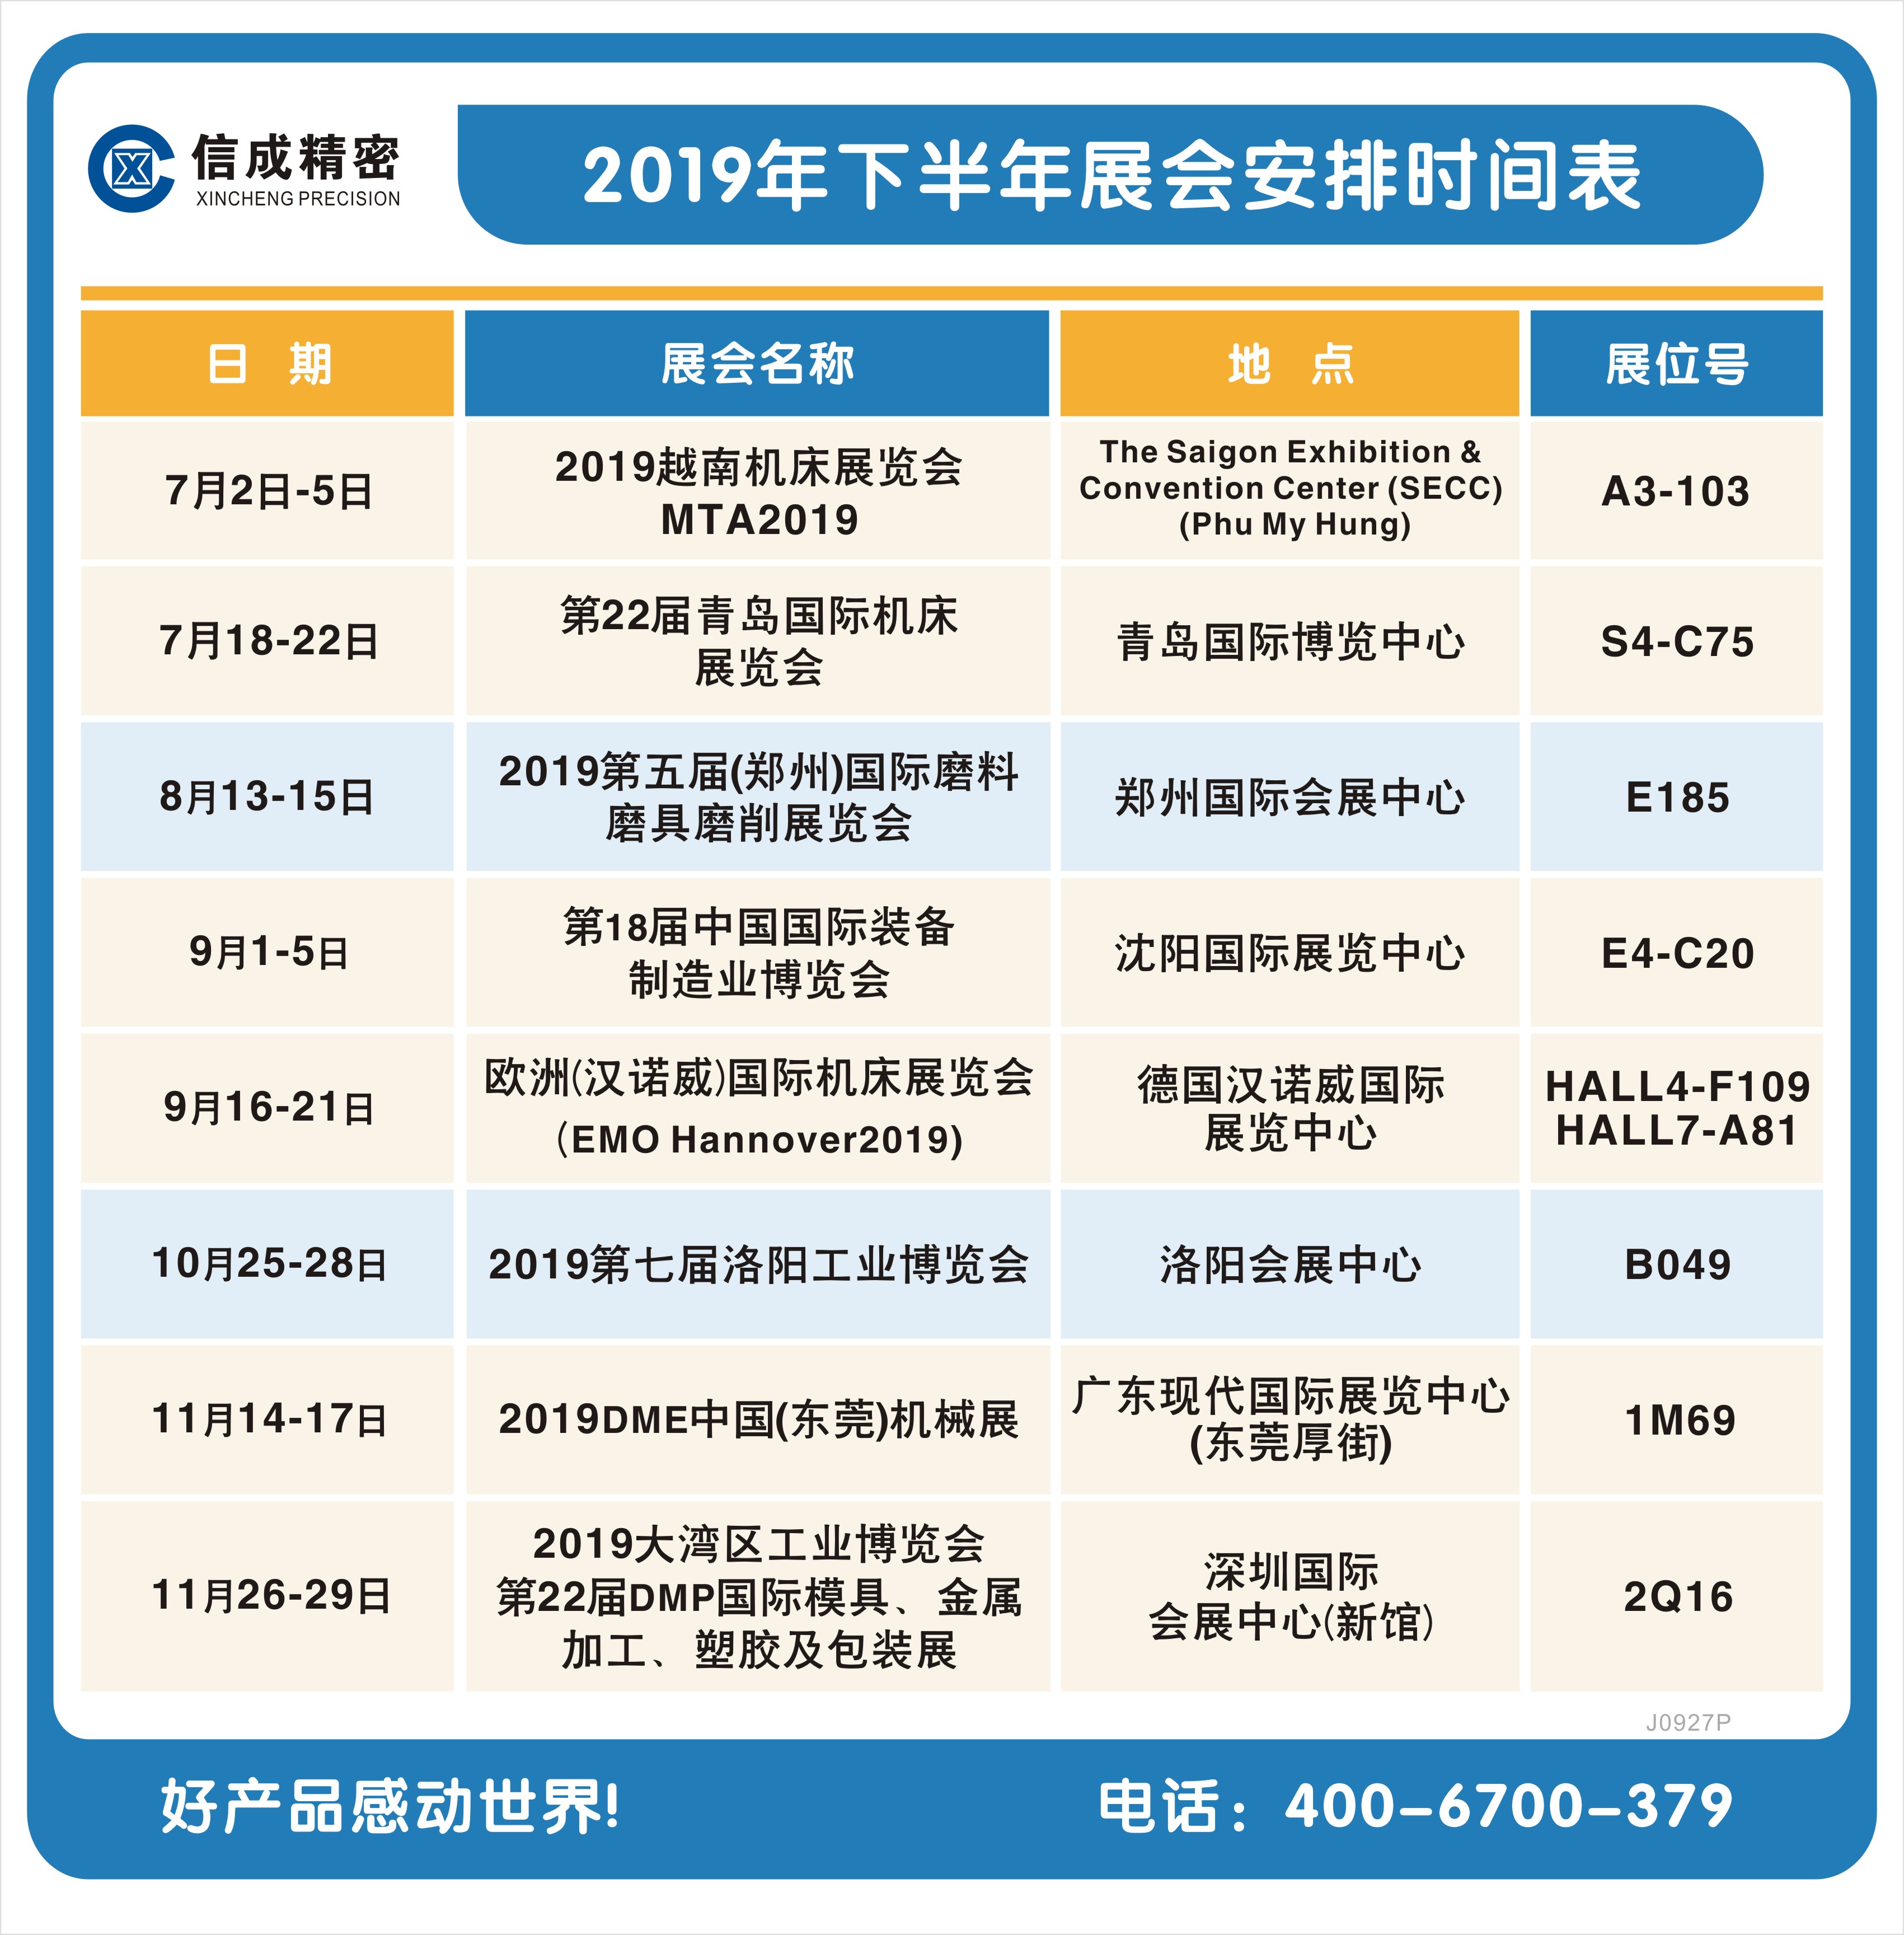 洛阳信成2019年下半年展会安排时间表